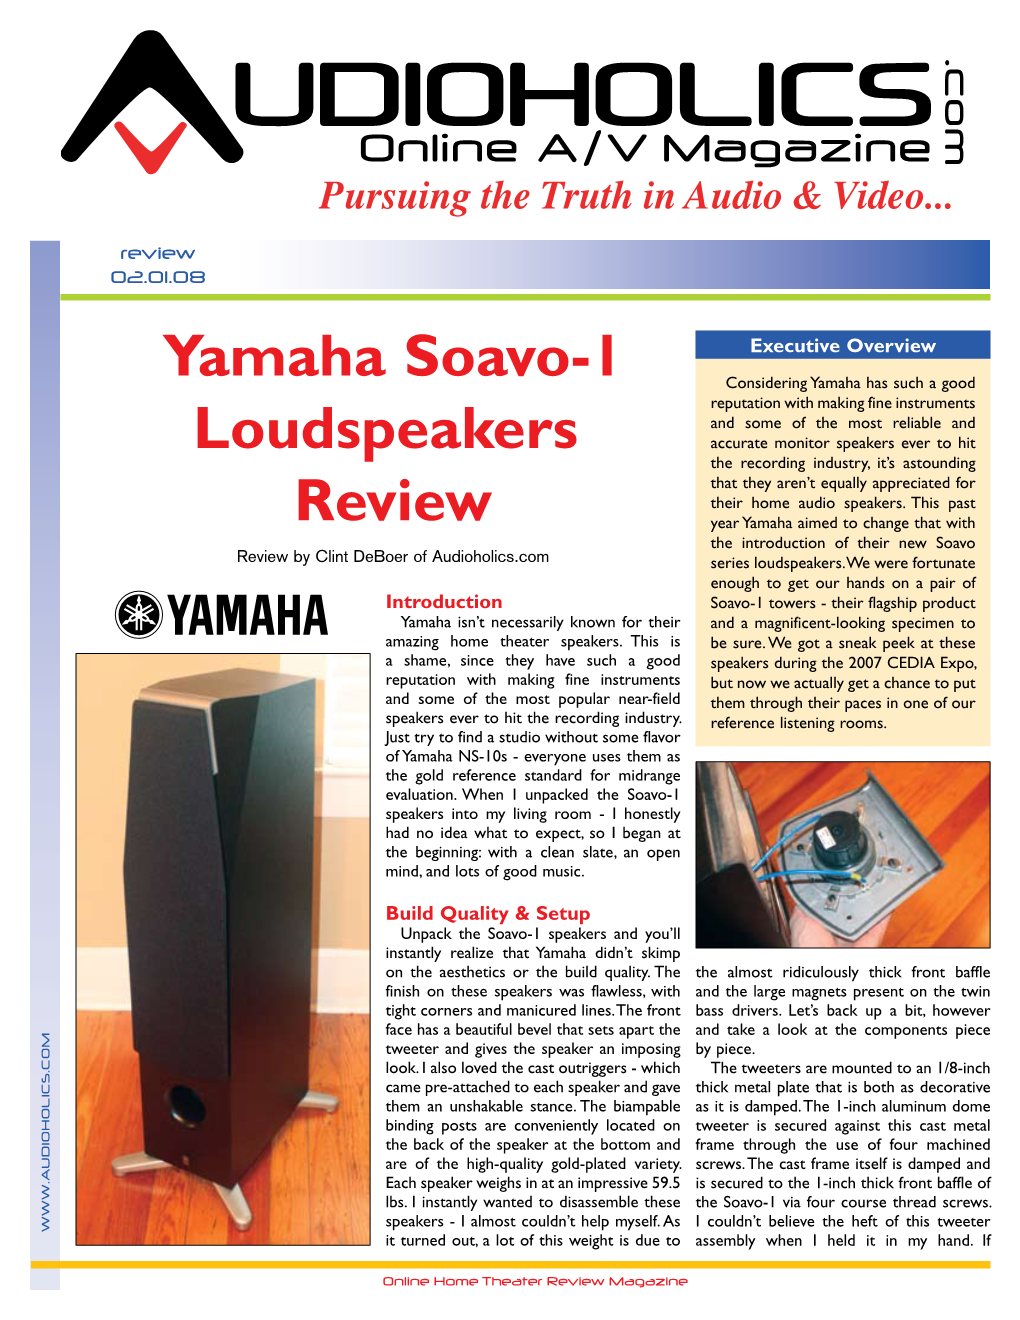 Yamaha Soavo-1 Loudspeakers Review